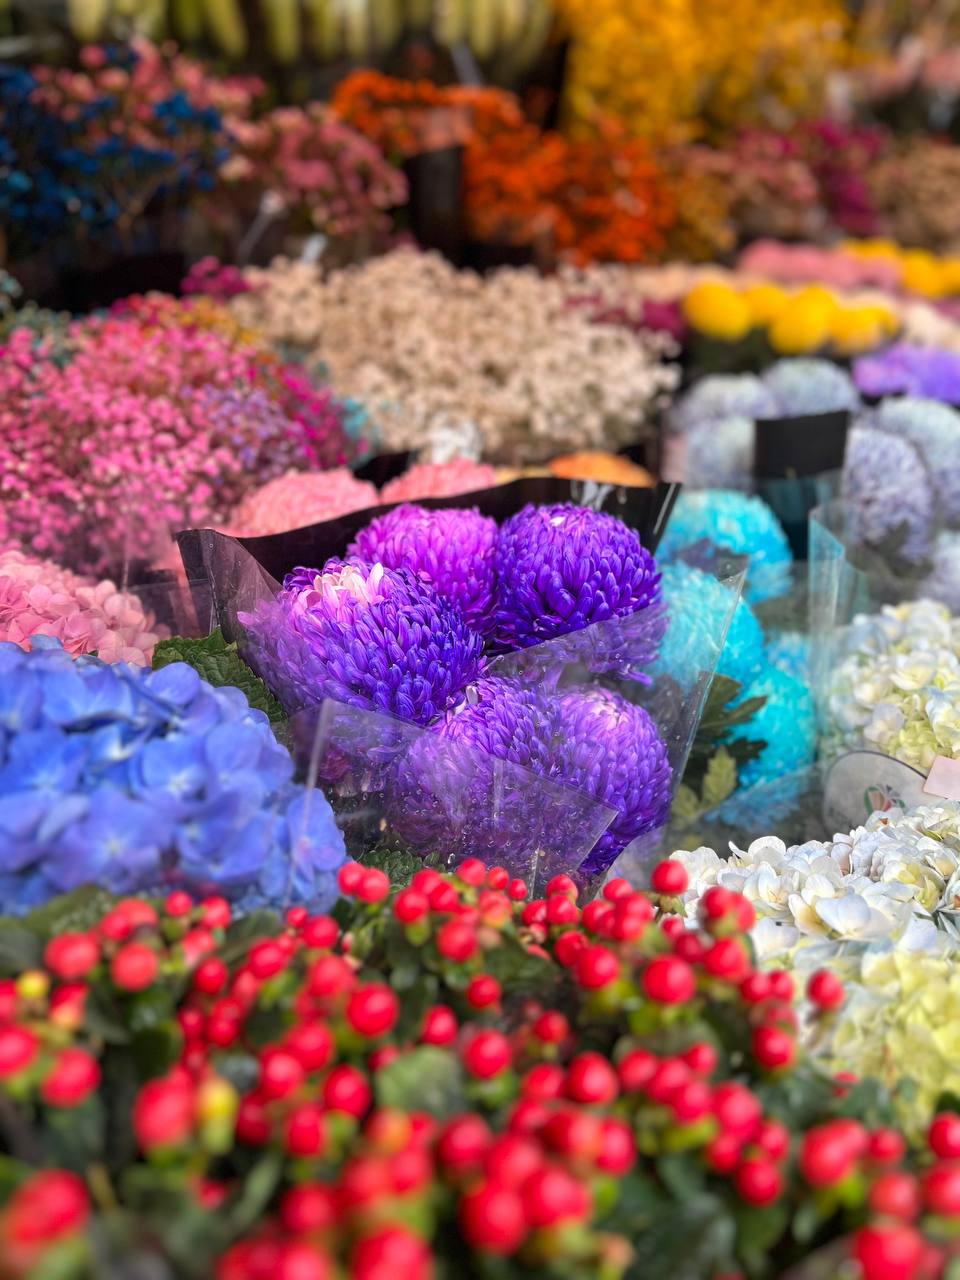 Mách bạn bí kíp mua hoa chợ Quảng Bá giá rẻ mà vẫn đẹp - Ảnh 15.